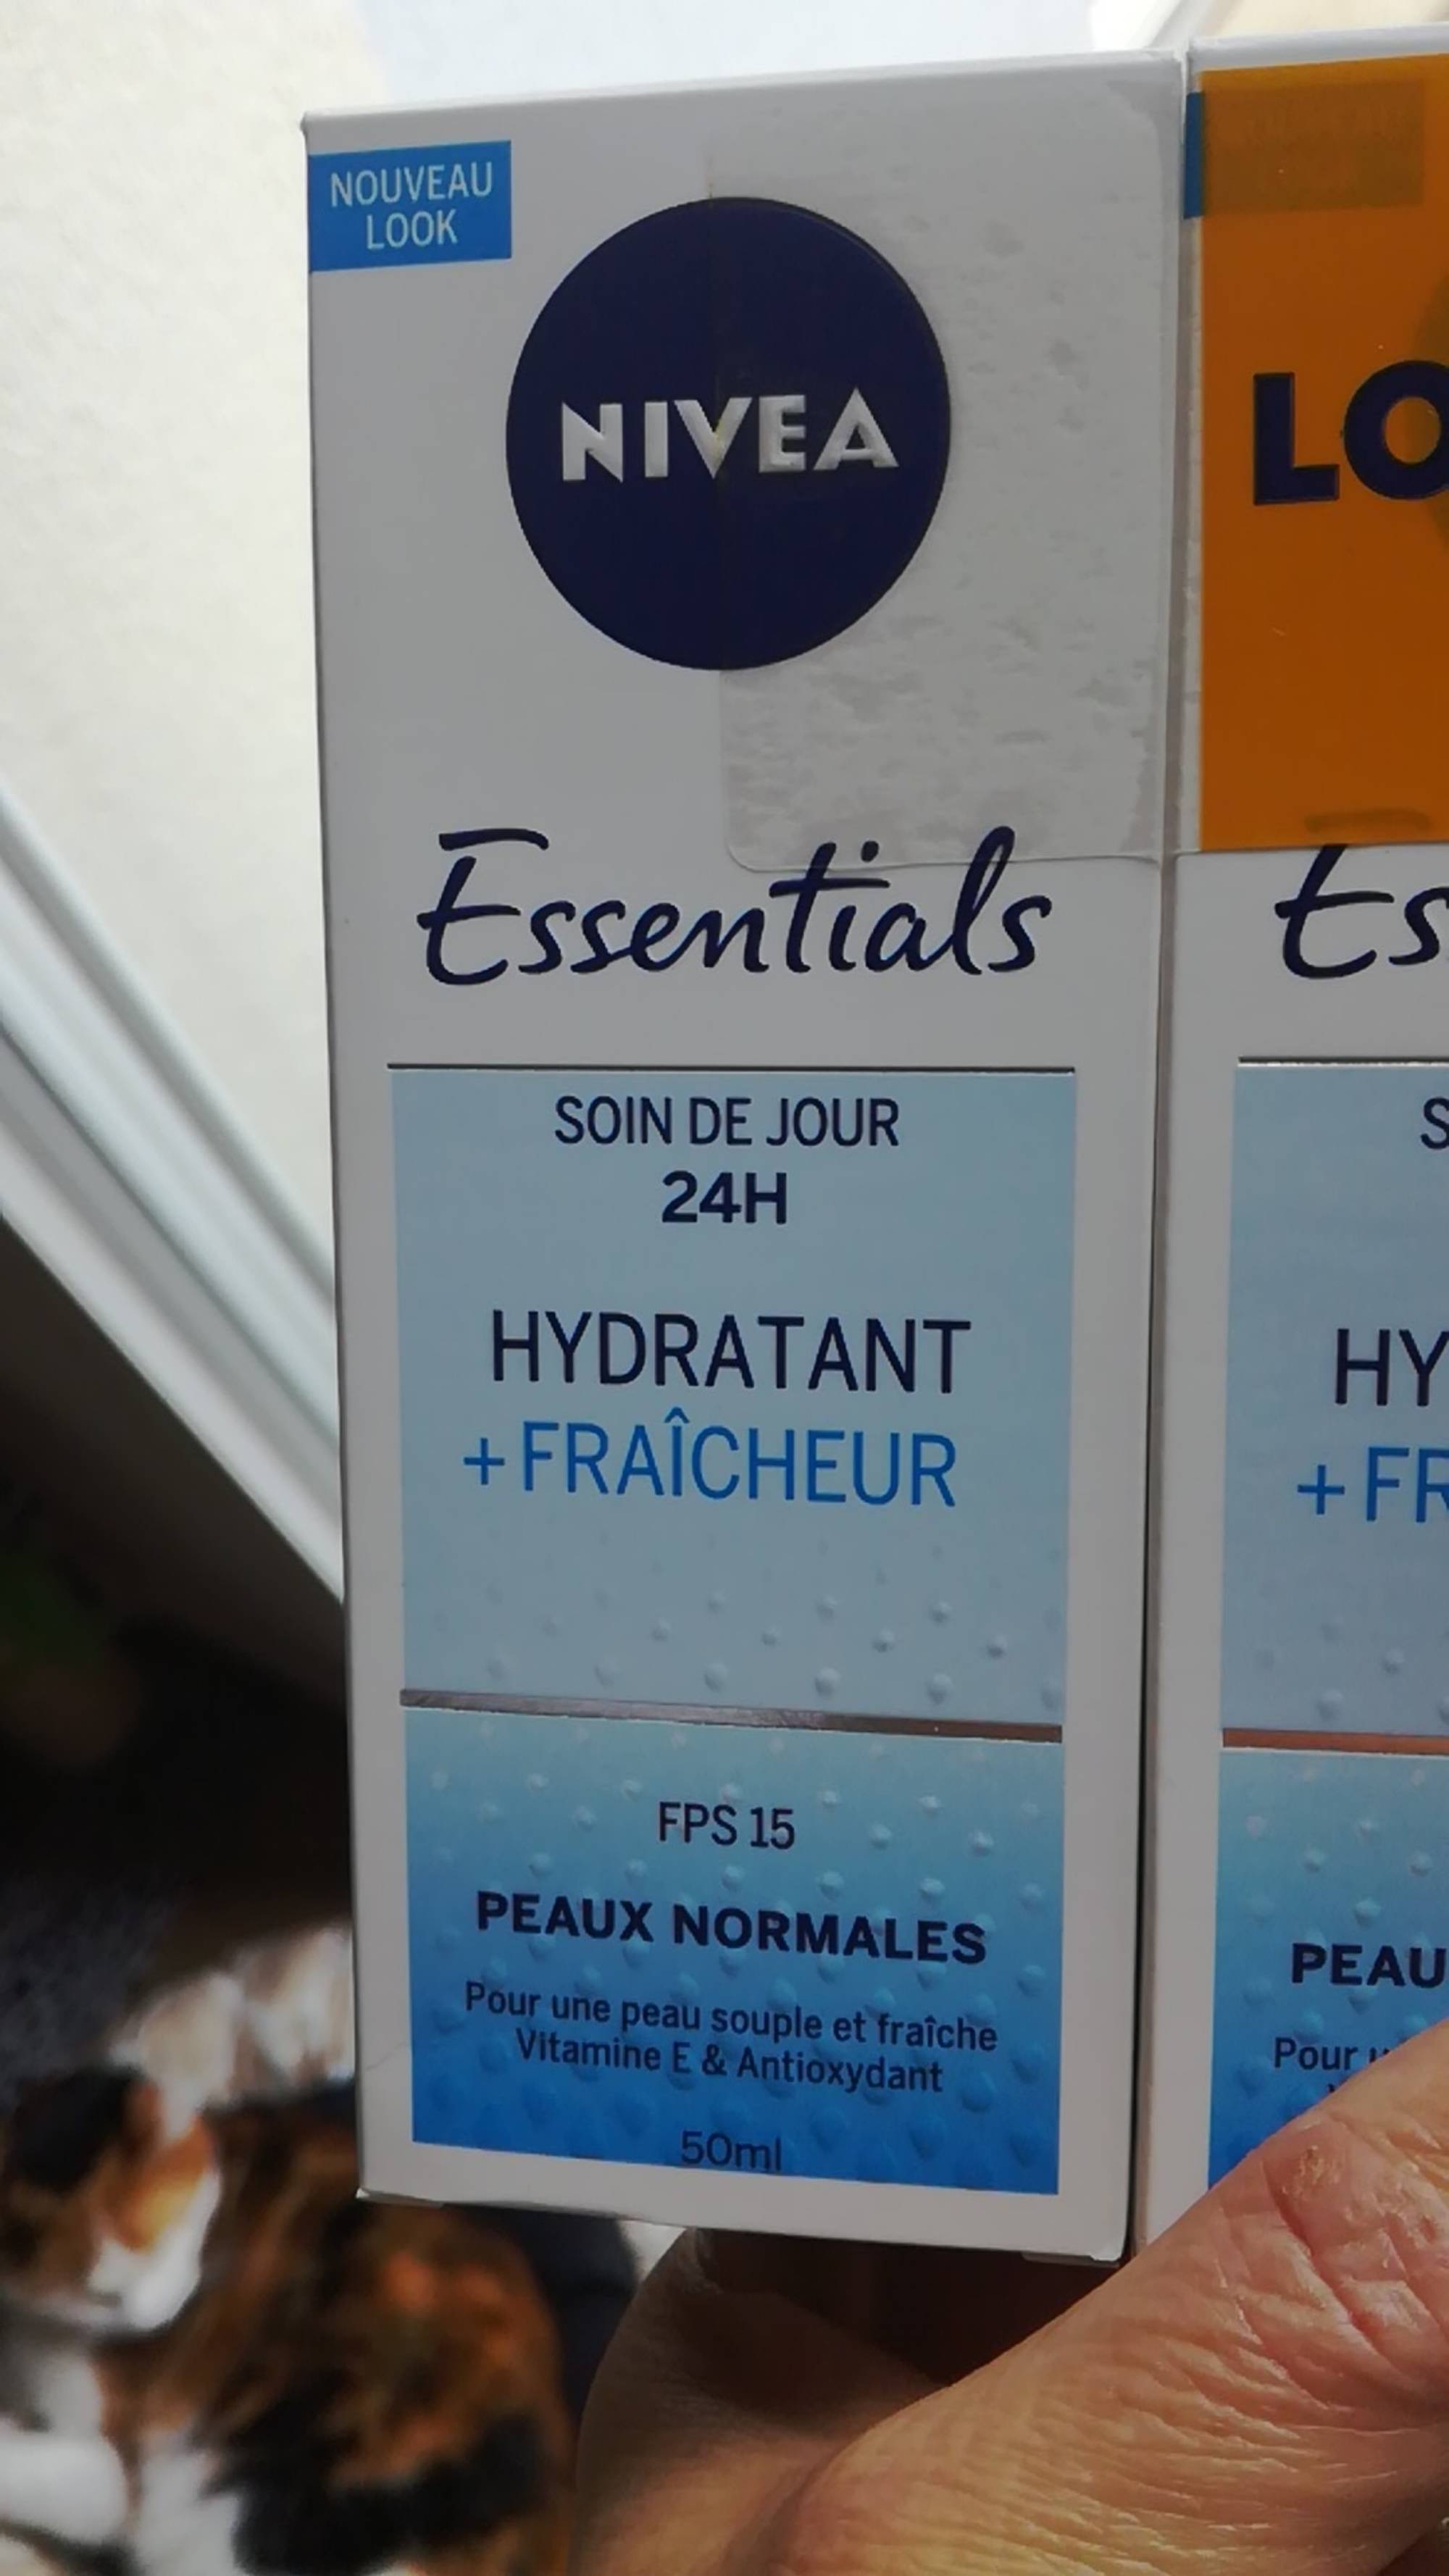 NIVEA - Essentials - Soin de jour hydratant + fraîcheur 24h fps 15